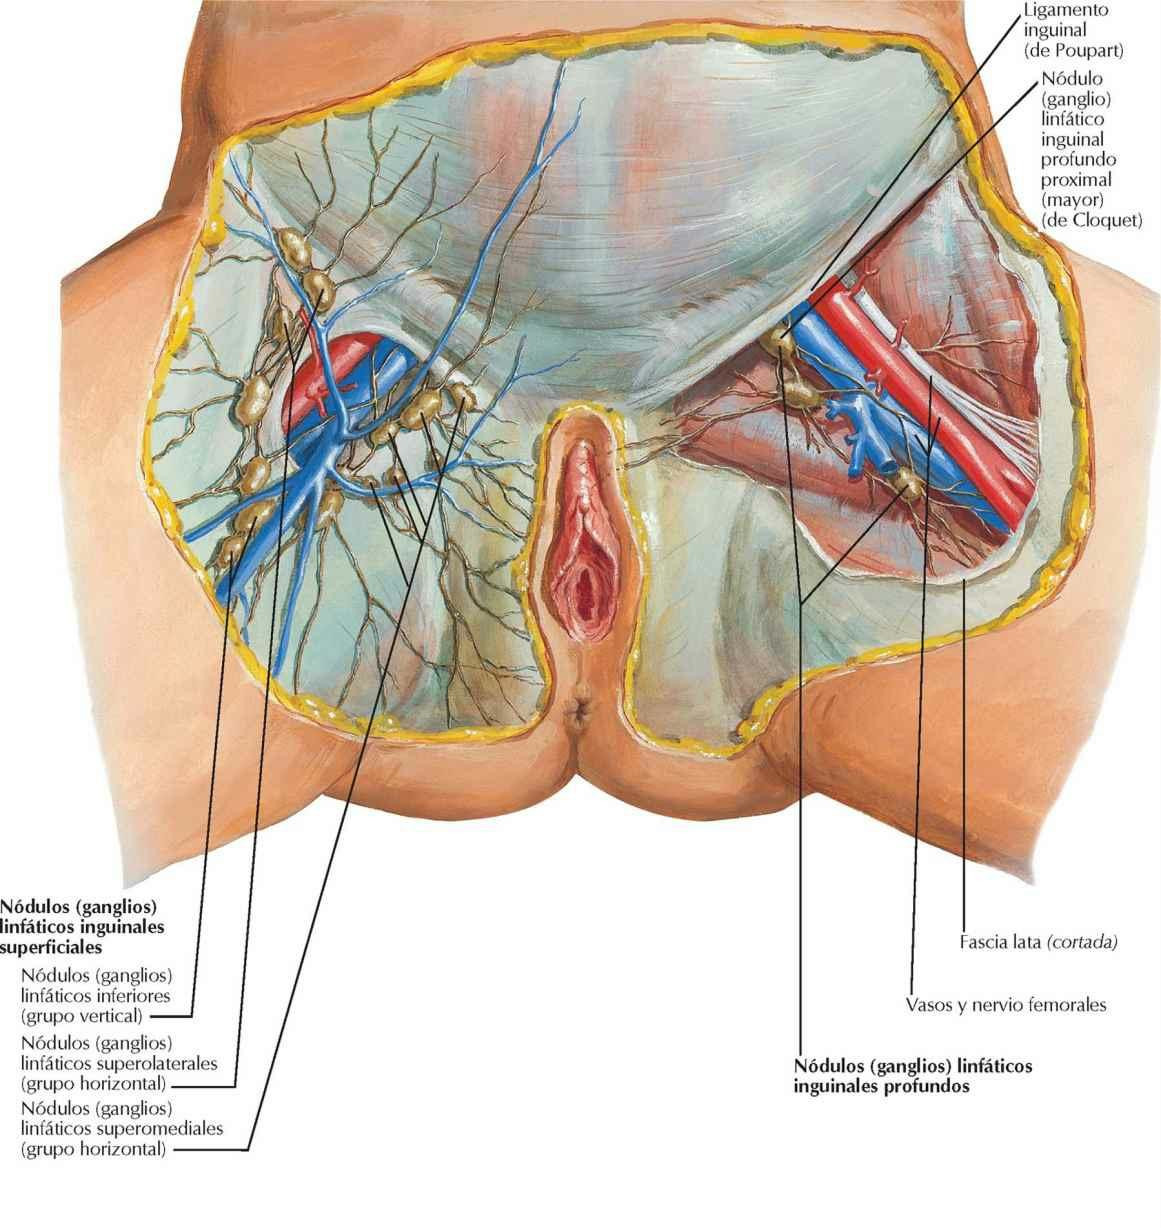 Vasos y nódulos (ganglios) linfáticos del periné: mujer